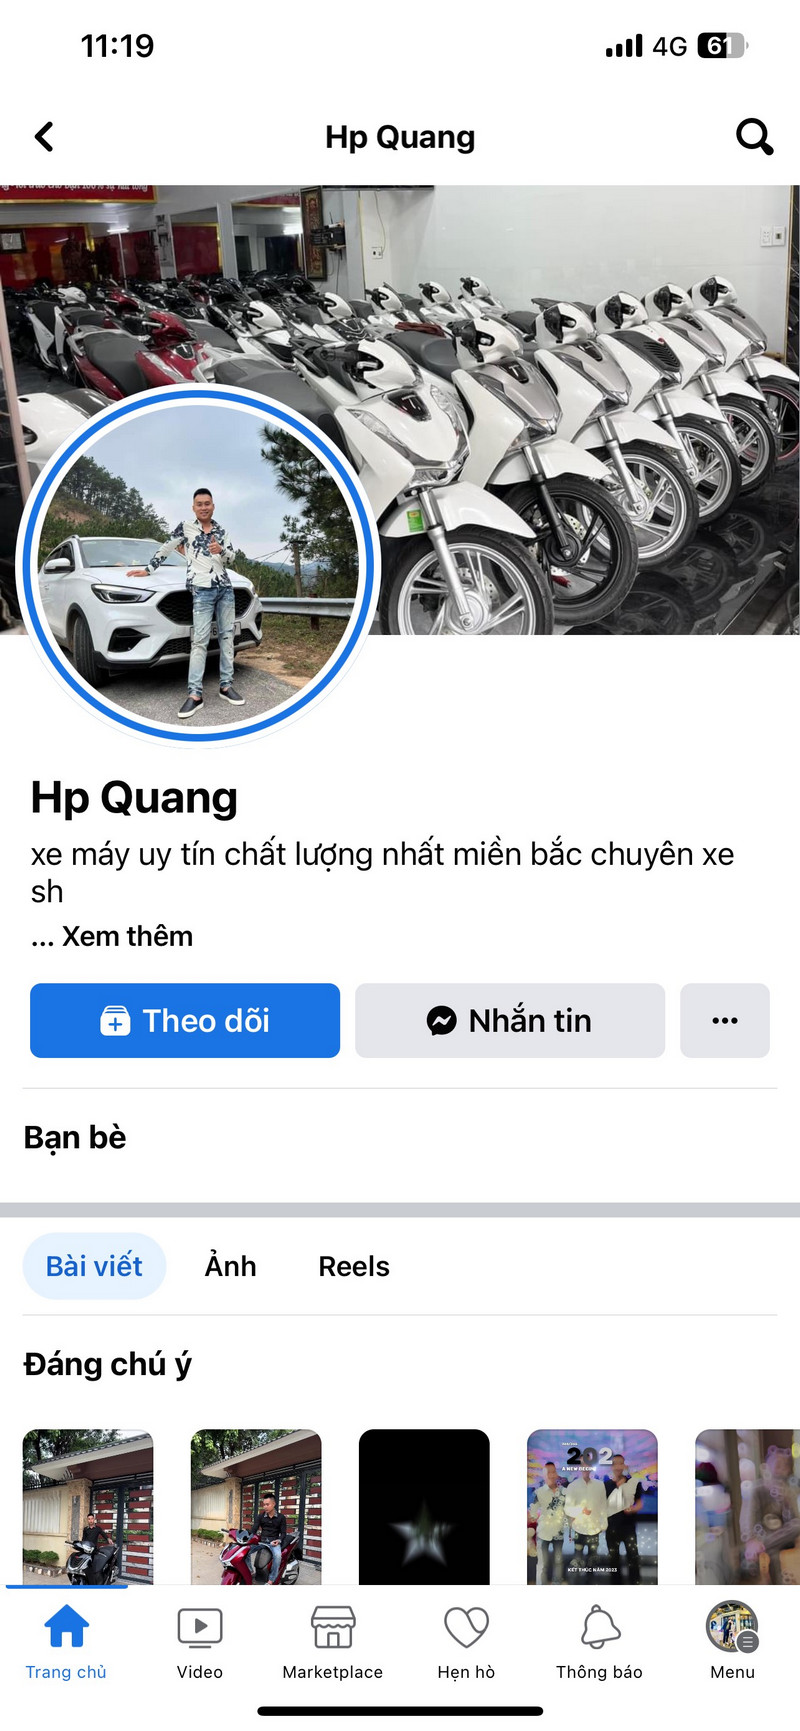 Tài khoản Facebook đối tượng Quang sử dụng để thực hiện hành vi lừa đảo chiếm đoạt tài sản